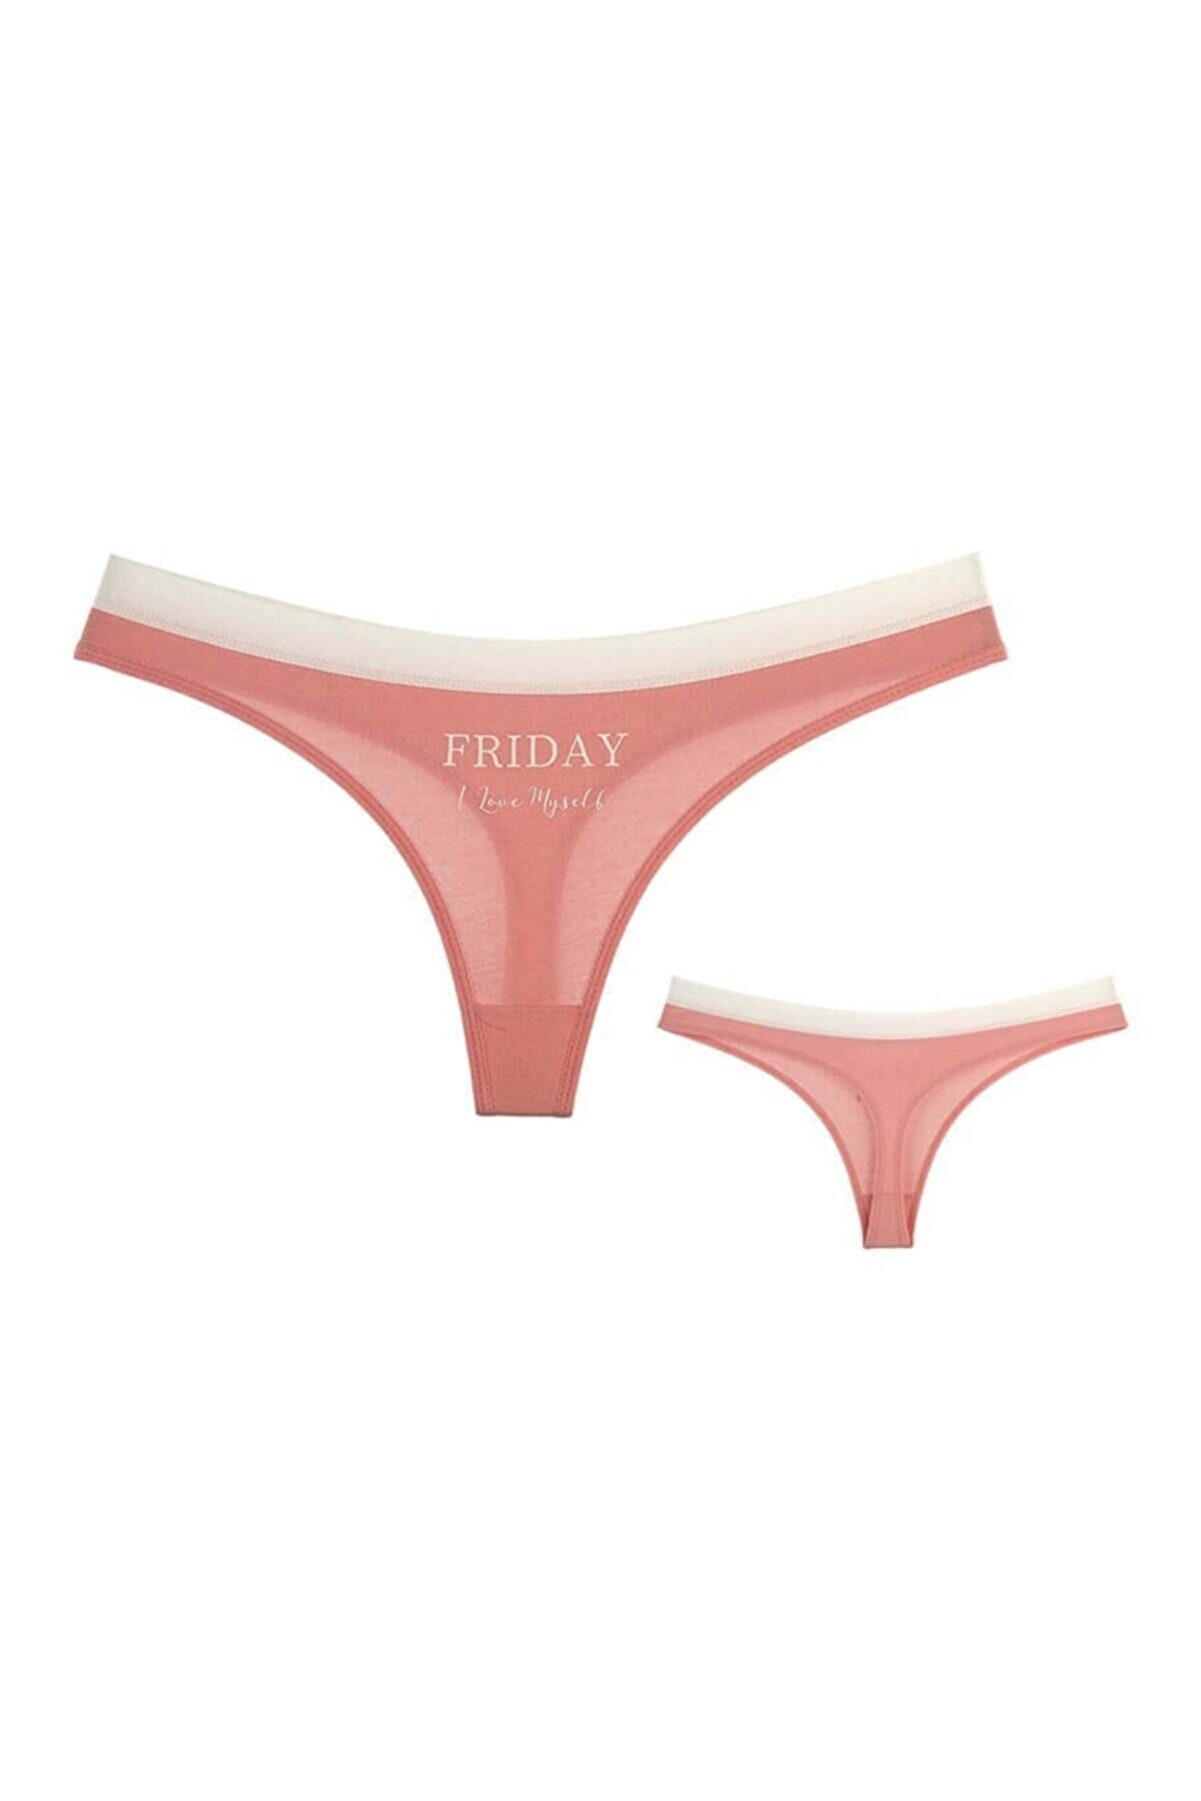 Panties / Ladies Underwear/thong /7 Days of the Week Women's